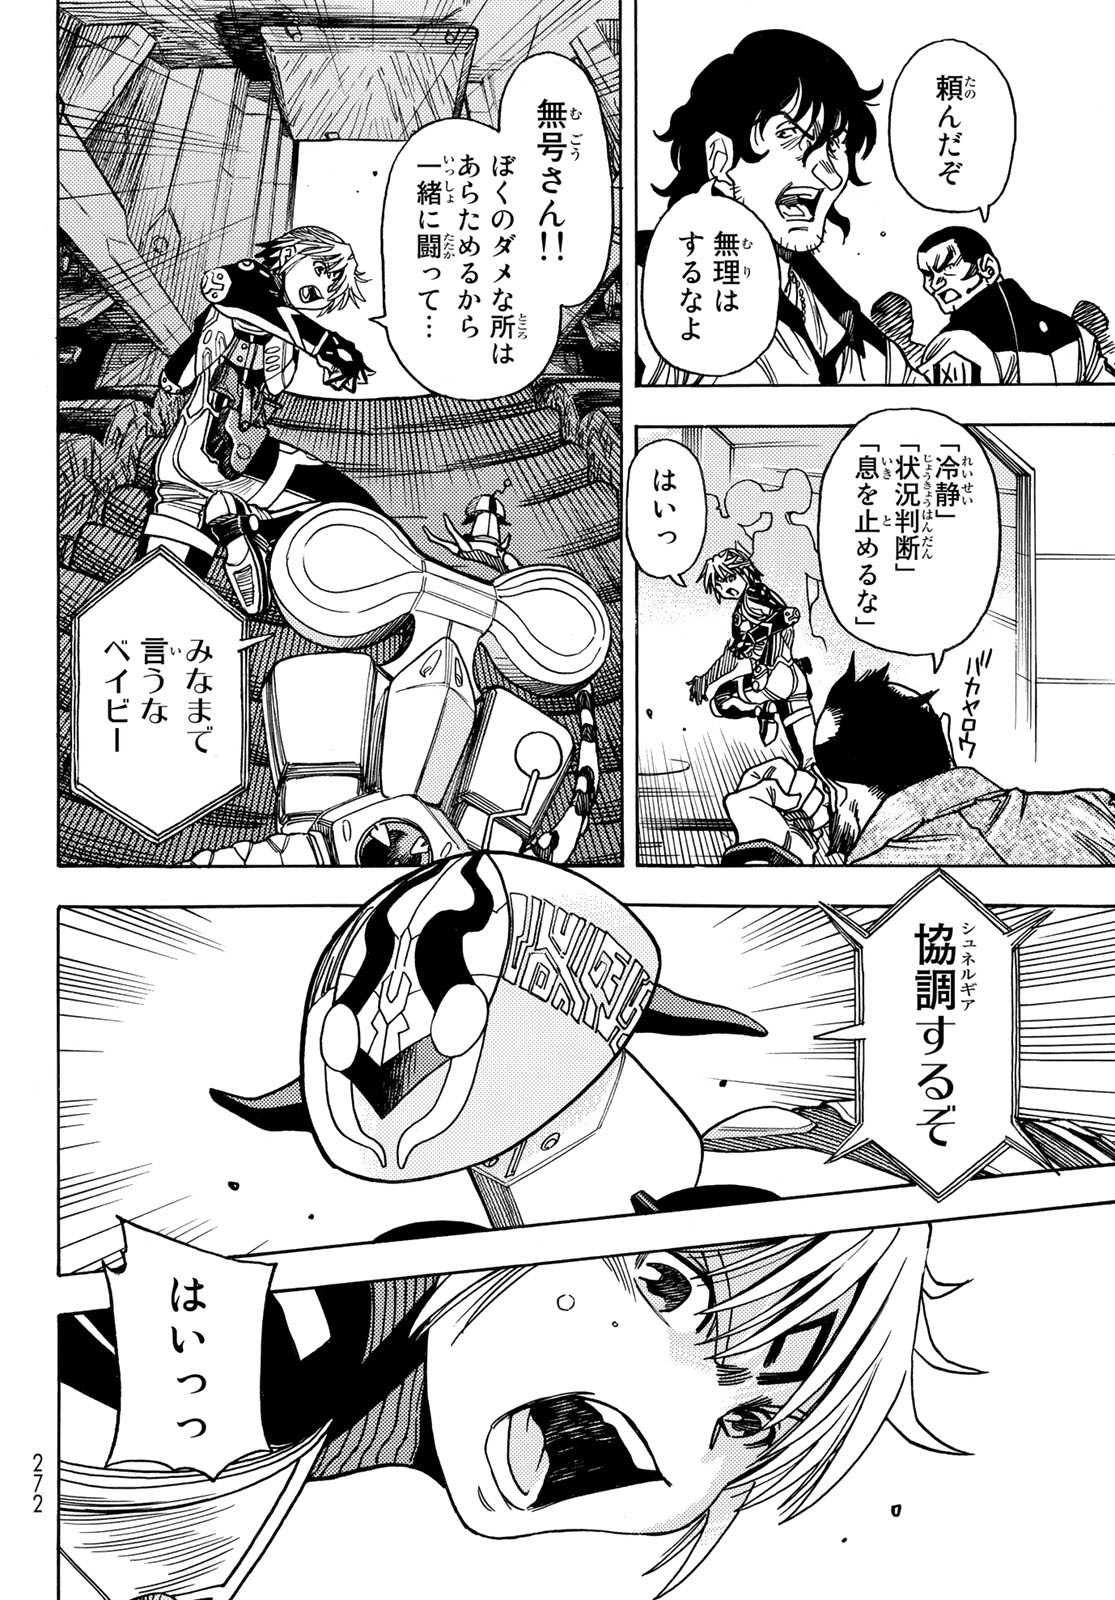 Mugou no Schnell Gear: Chikyuugai Kisouka AI - Chapter 45 - Page 8